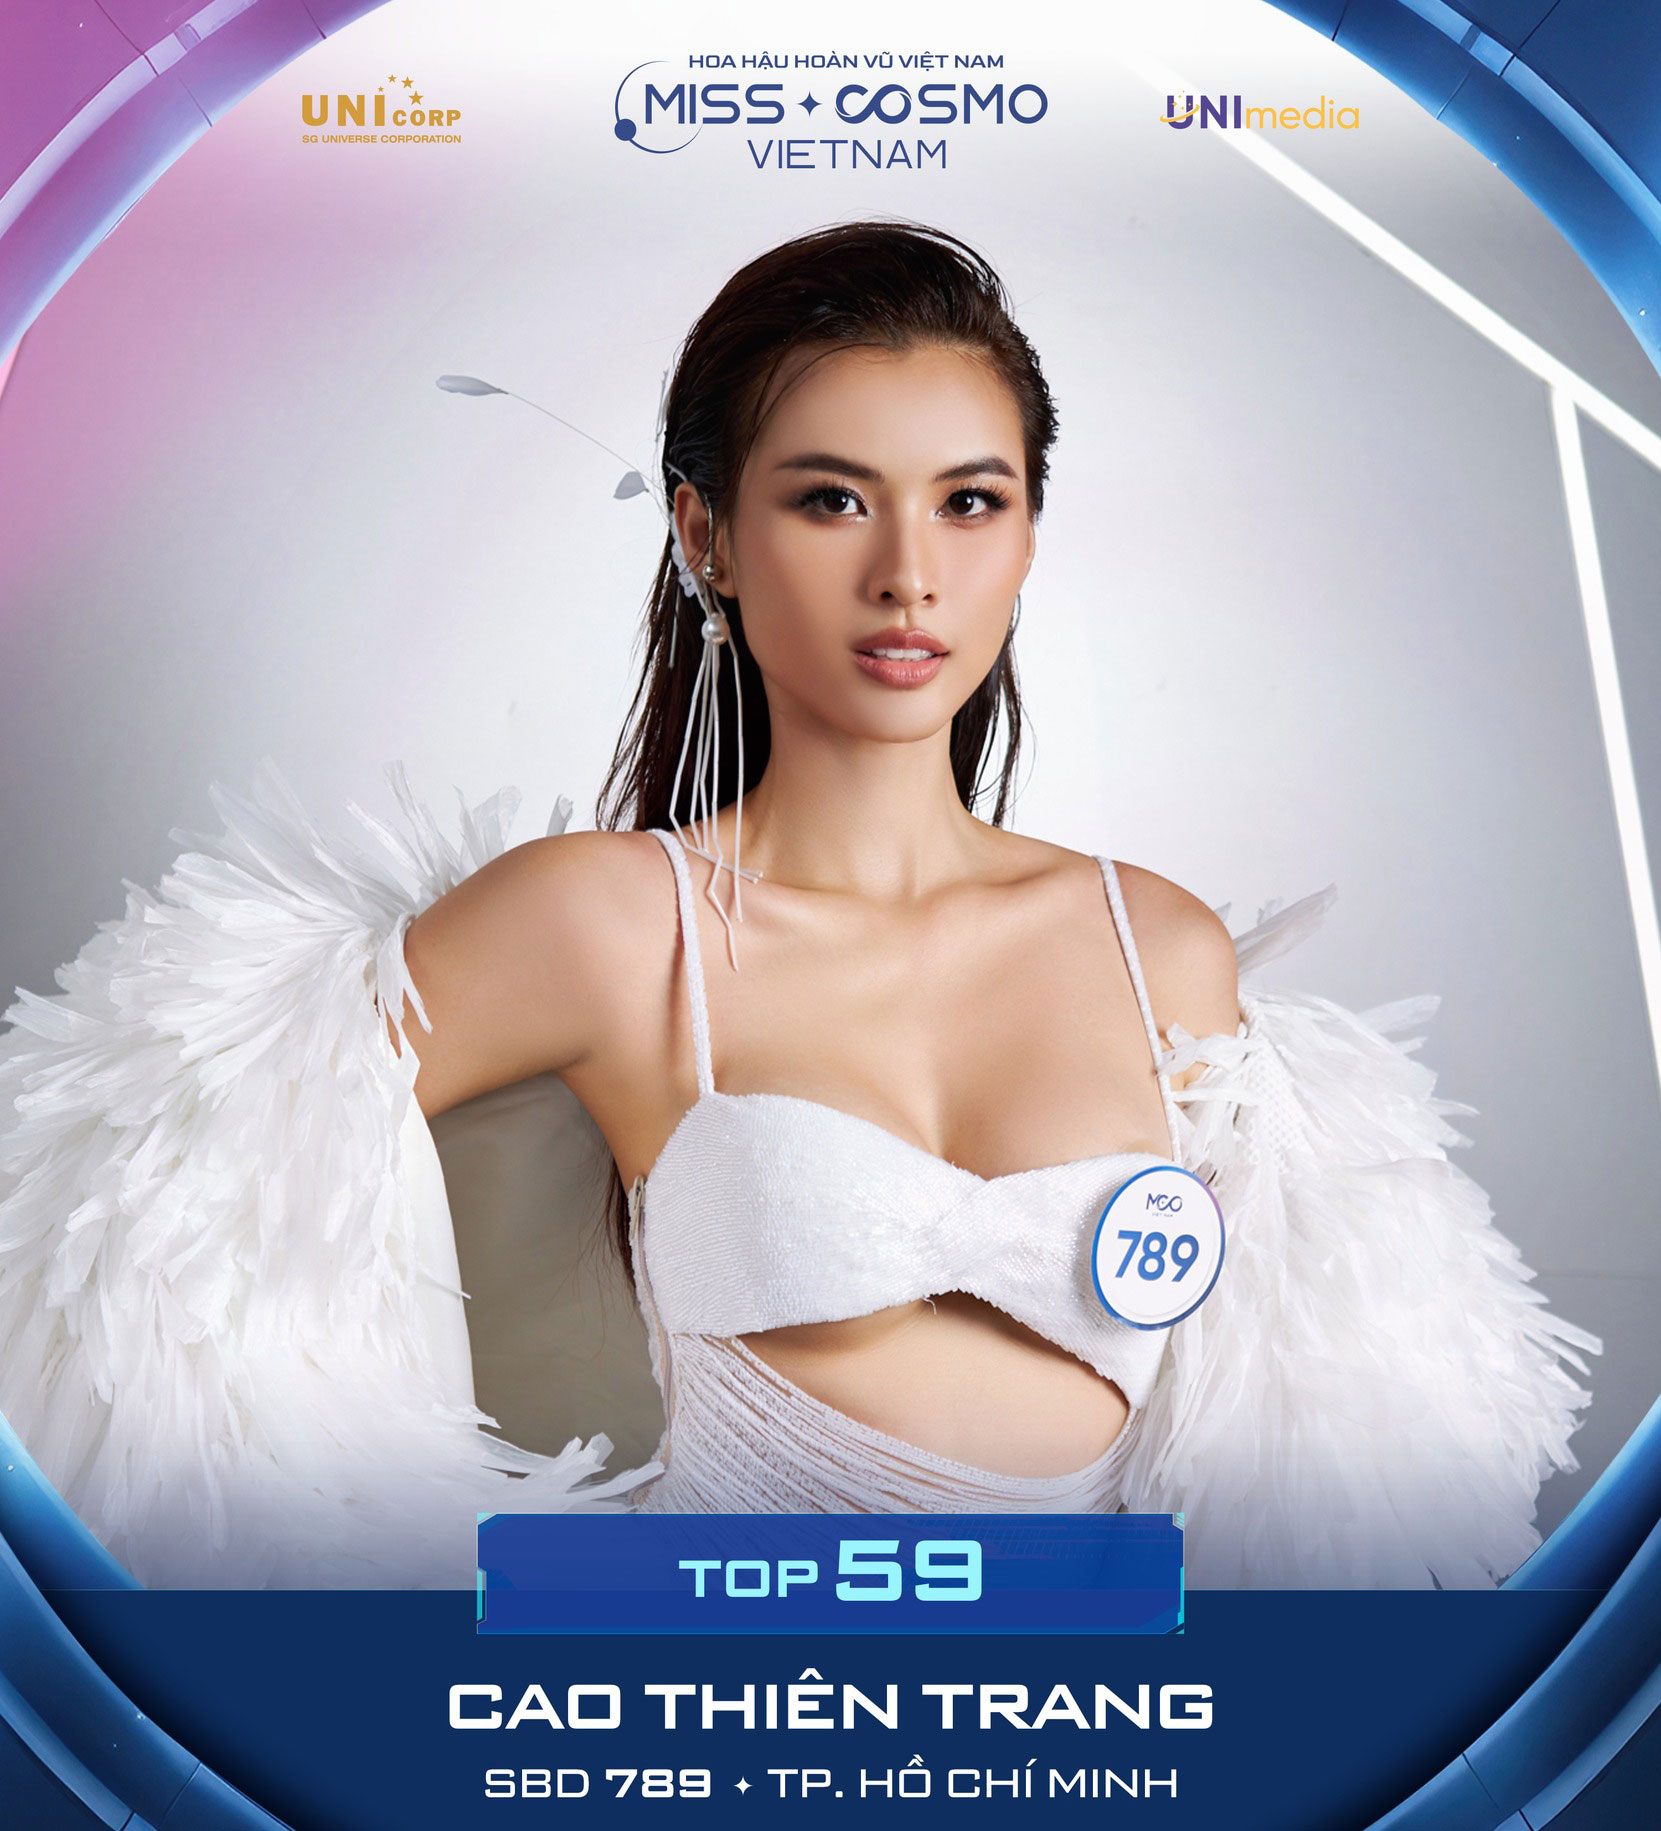 Cao Thiên Trang là một trong 10 thí sinh nhận vé Cosmo Pass vào thẳng Top 59 của Miss Cosmo Vietnam 2023